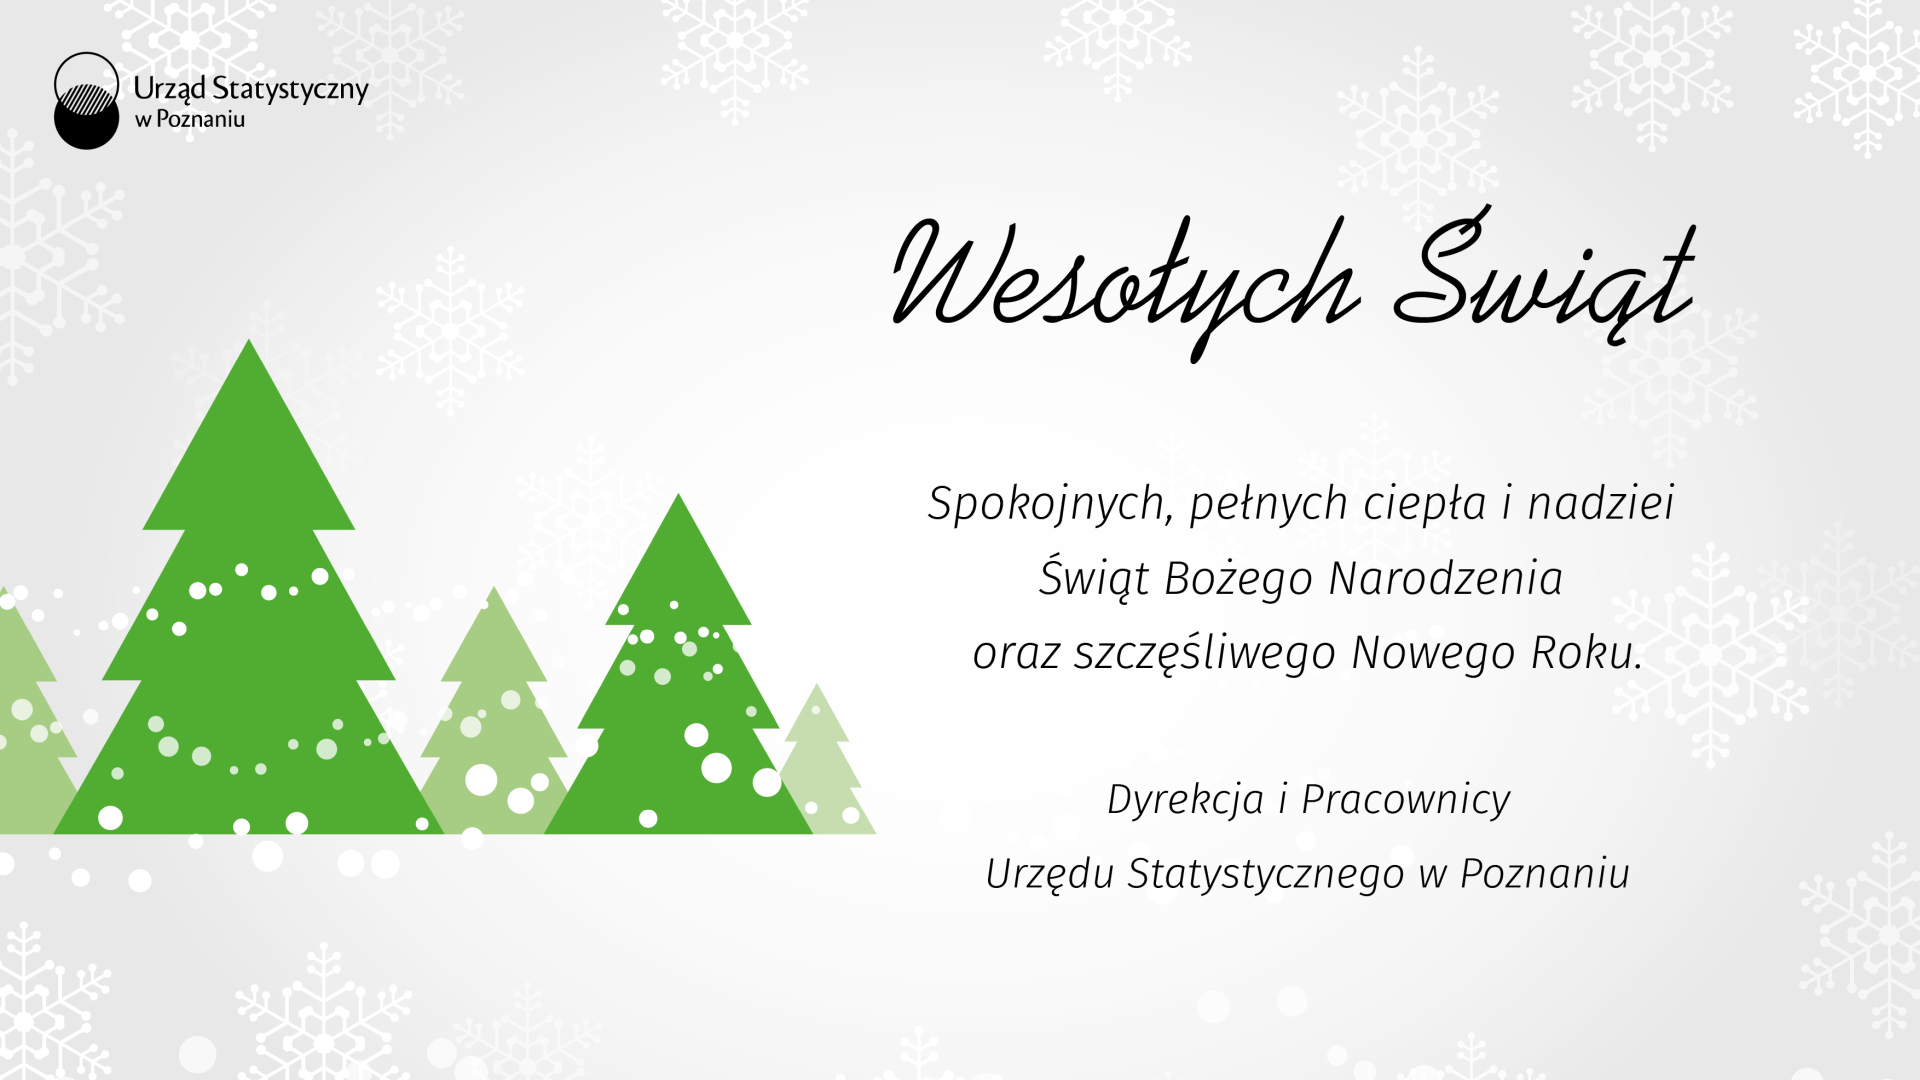 Wesołych Świąt. Spokojnych, pełnych ciepła i nadziei Świąt Bożego Narodzenia oraz szczęśliwego Nowego Roku. Dyrekcja i Pracownicy Urzędu Statystycznego w Poznaniu